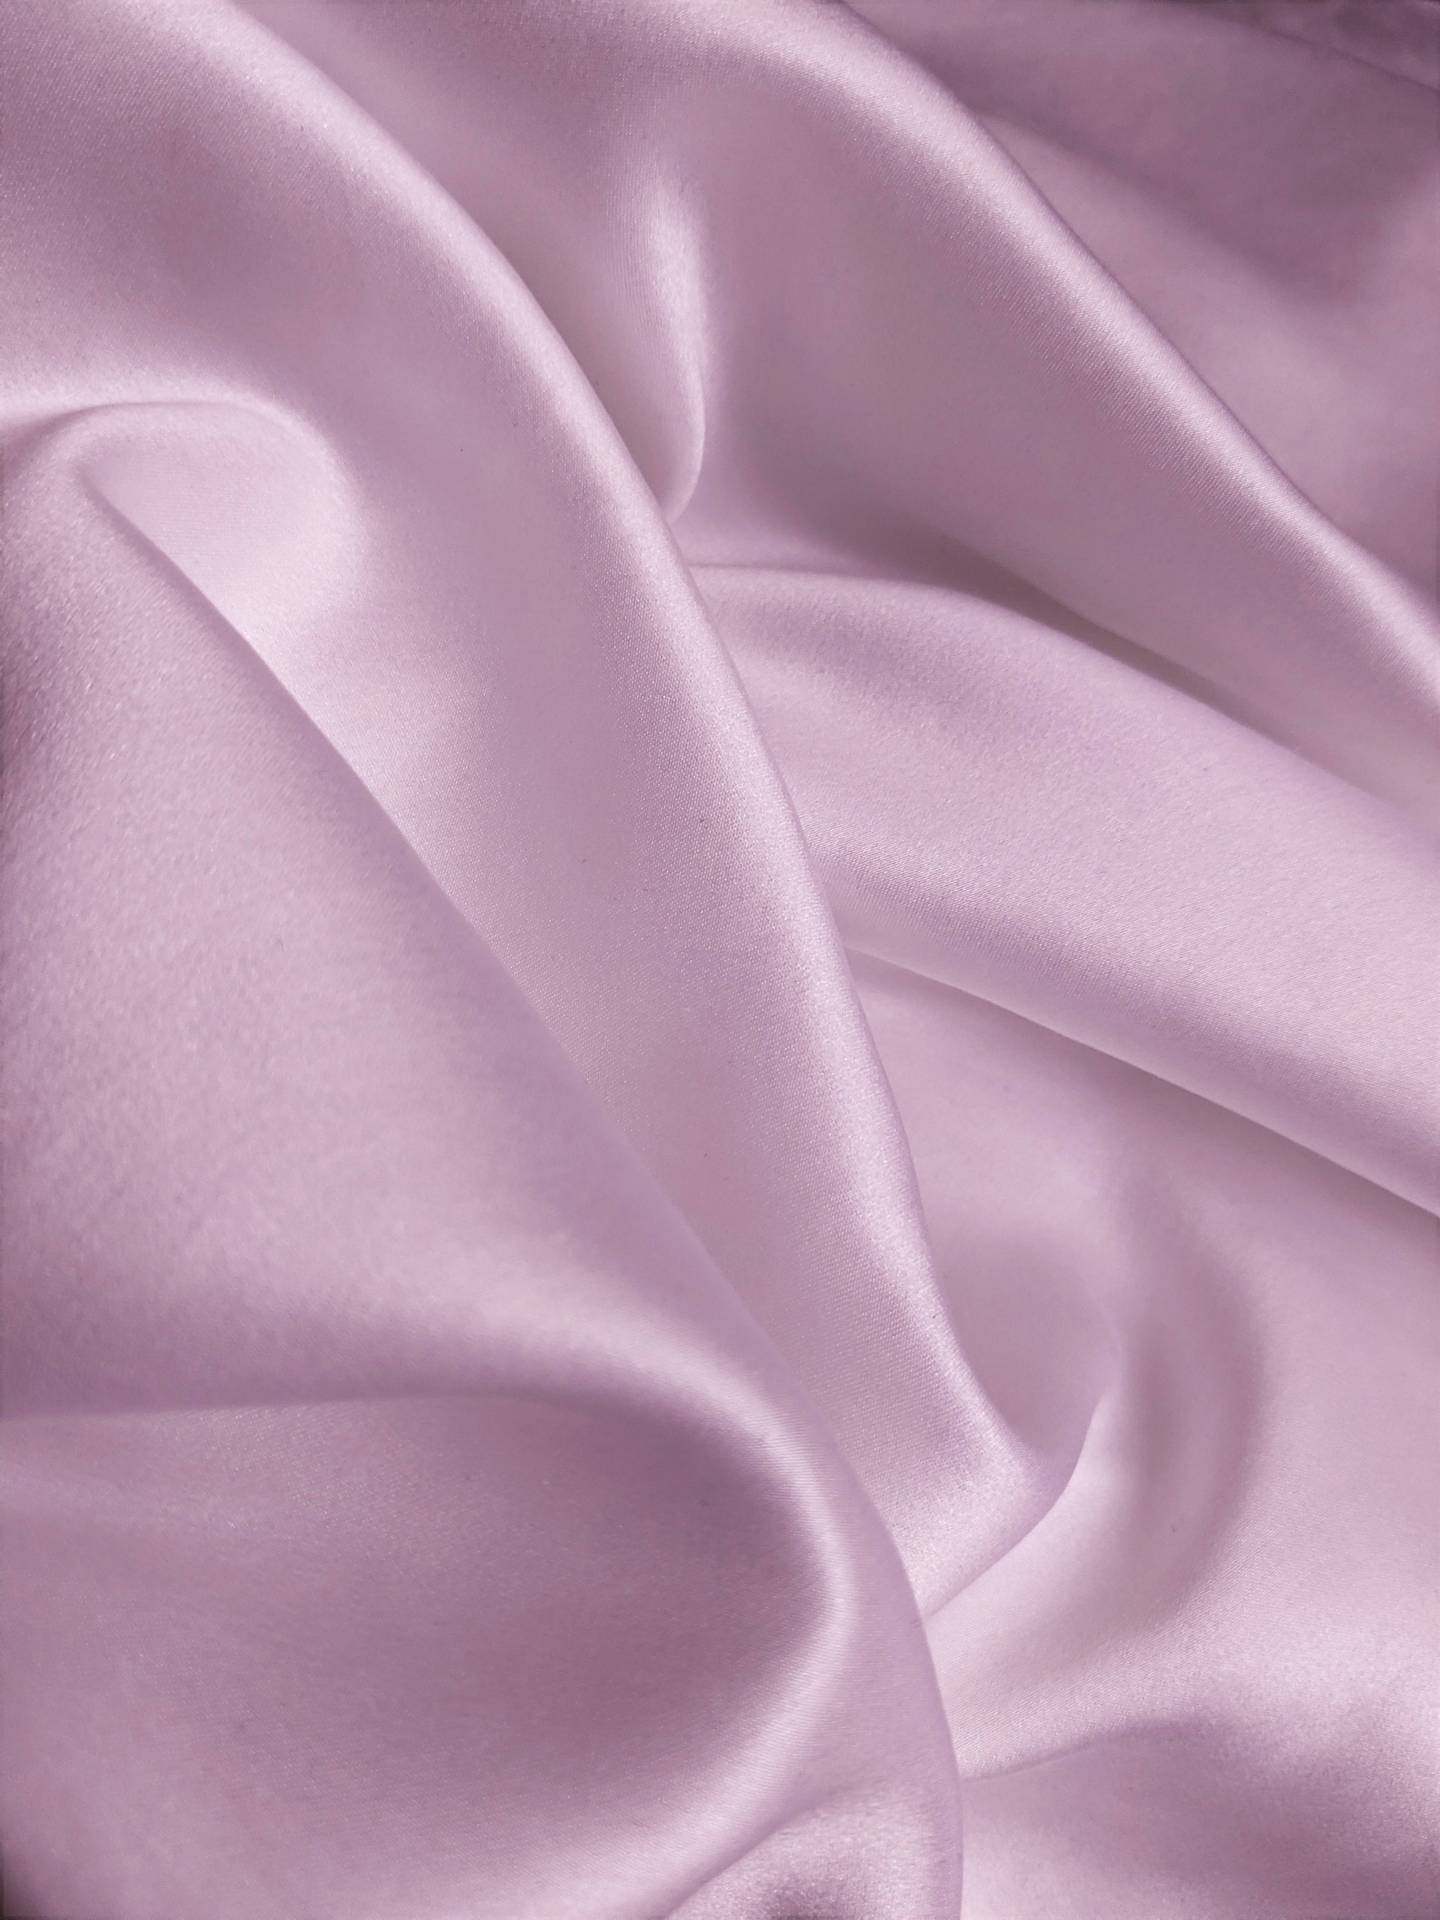 Pale Pink Silk Background